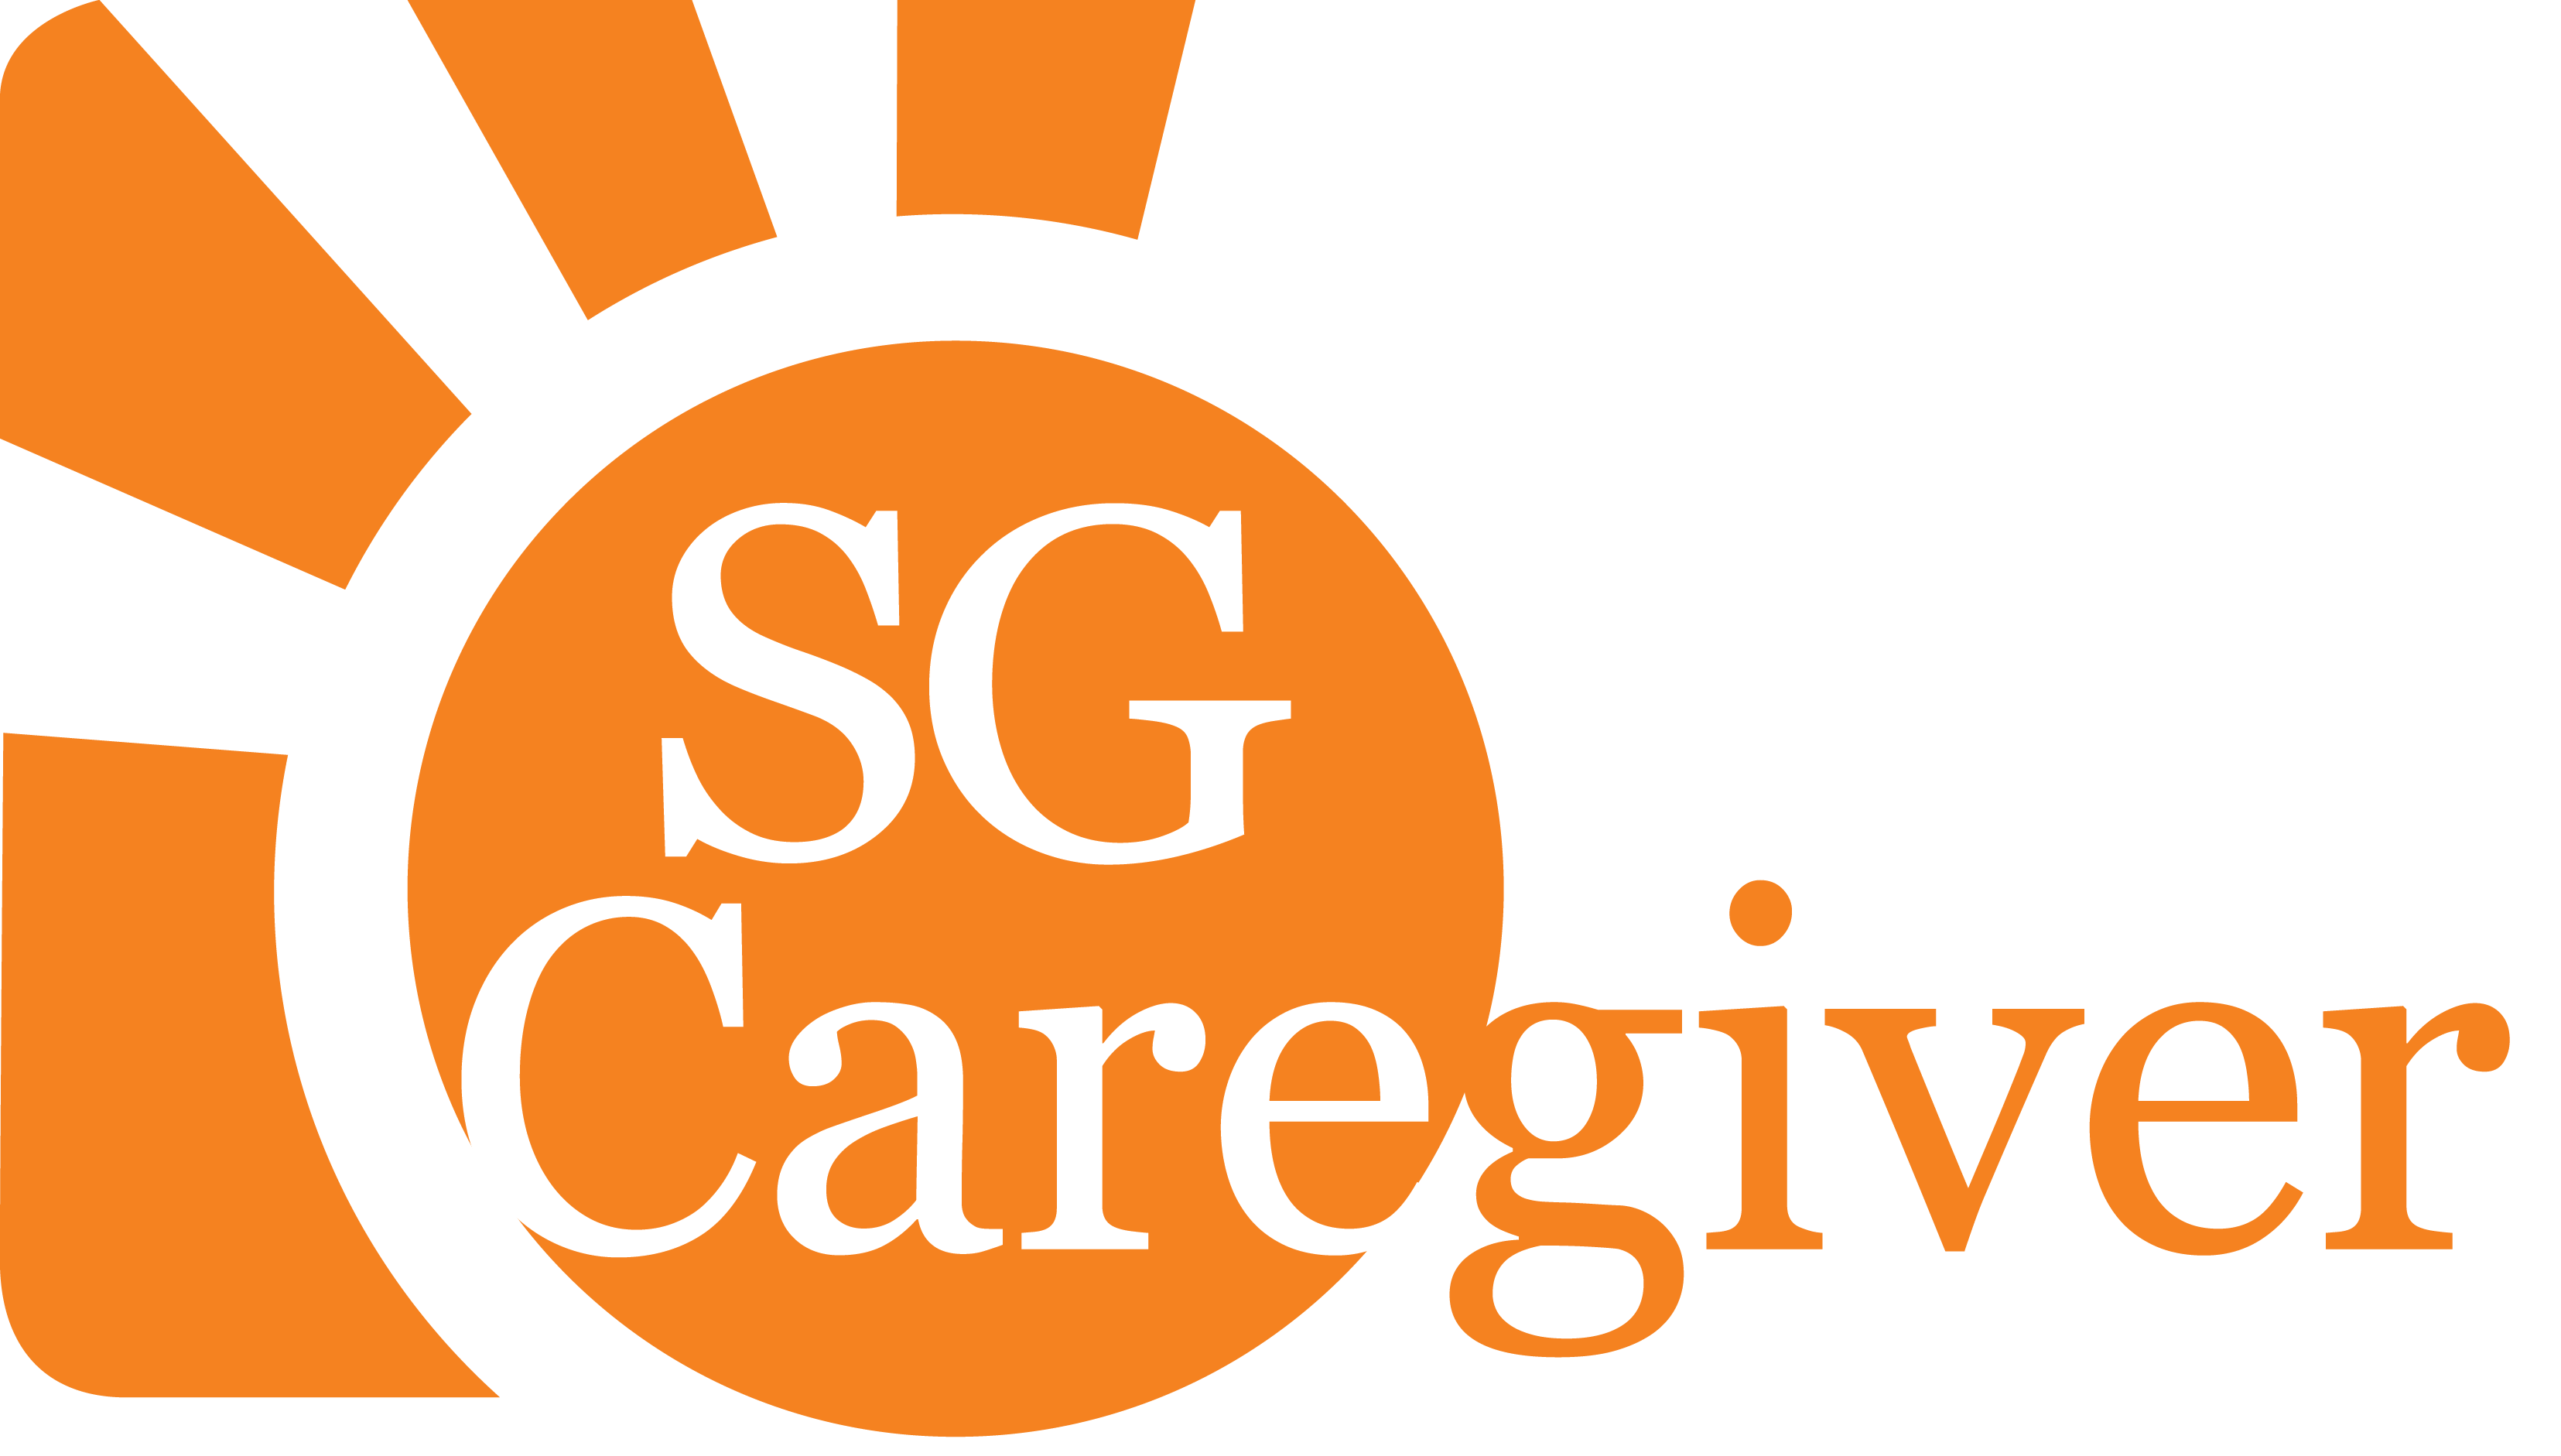 SG Caregiver